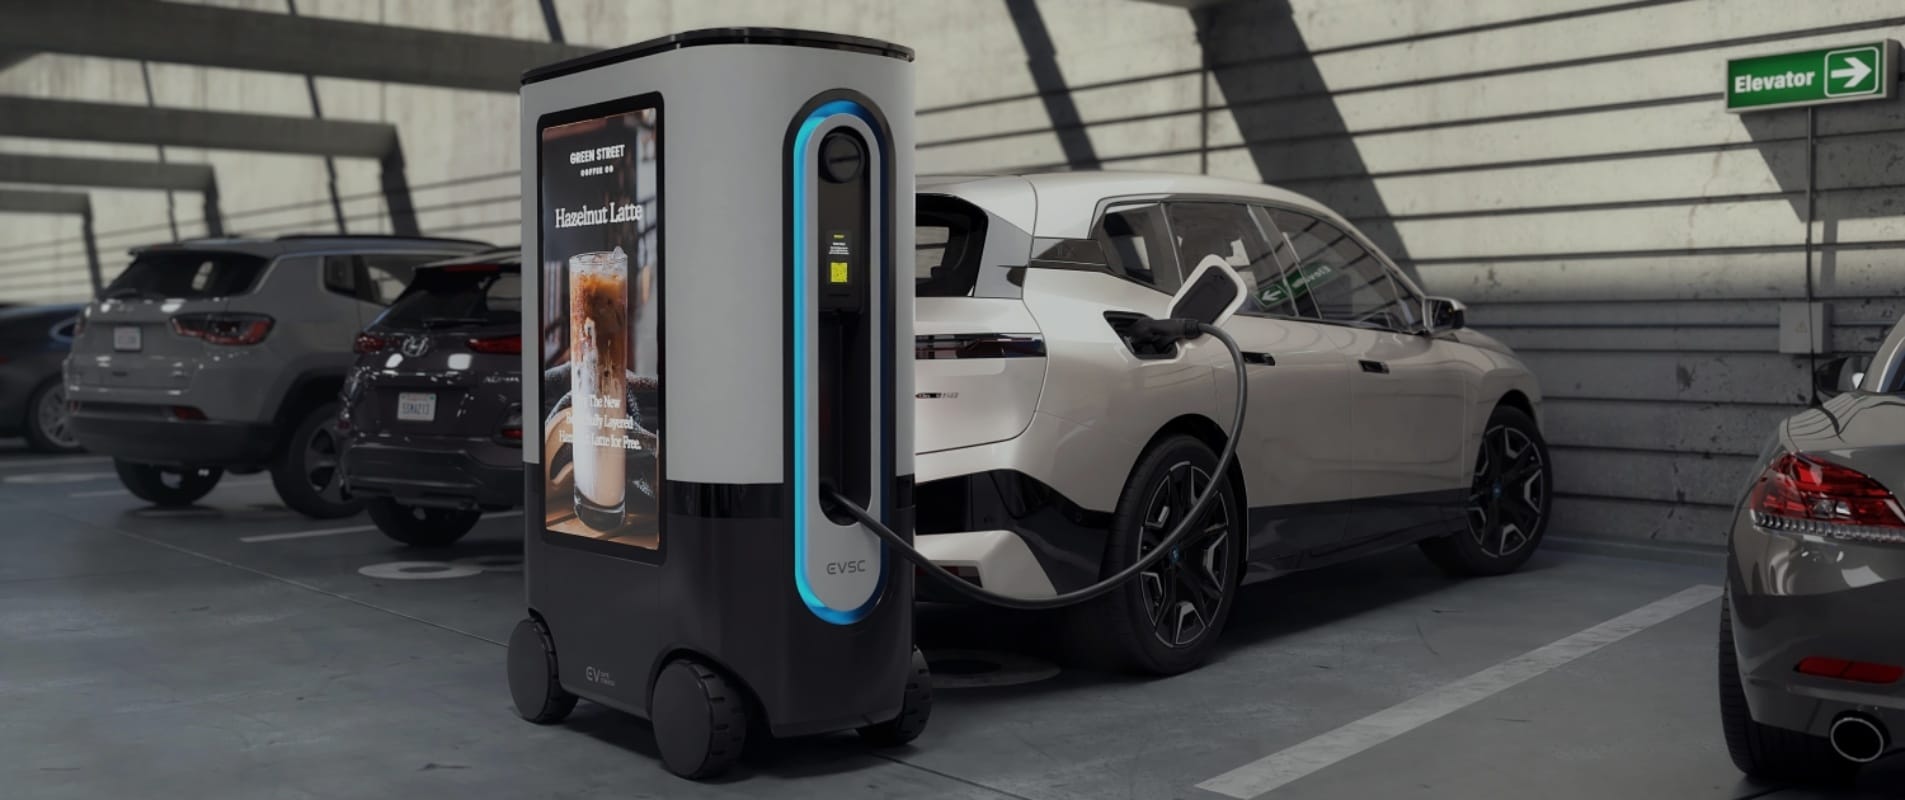 O “Ziggy”, o primeiro robô frentista do mundo está programado para entrar em operação em 2023 e promete inovar no conceito de recarga de carros elétricos